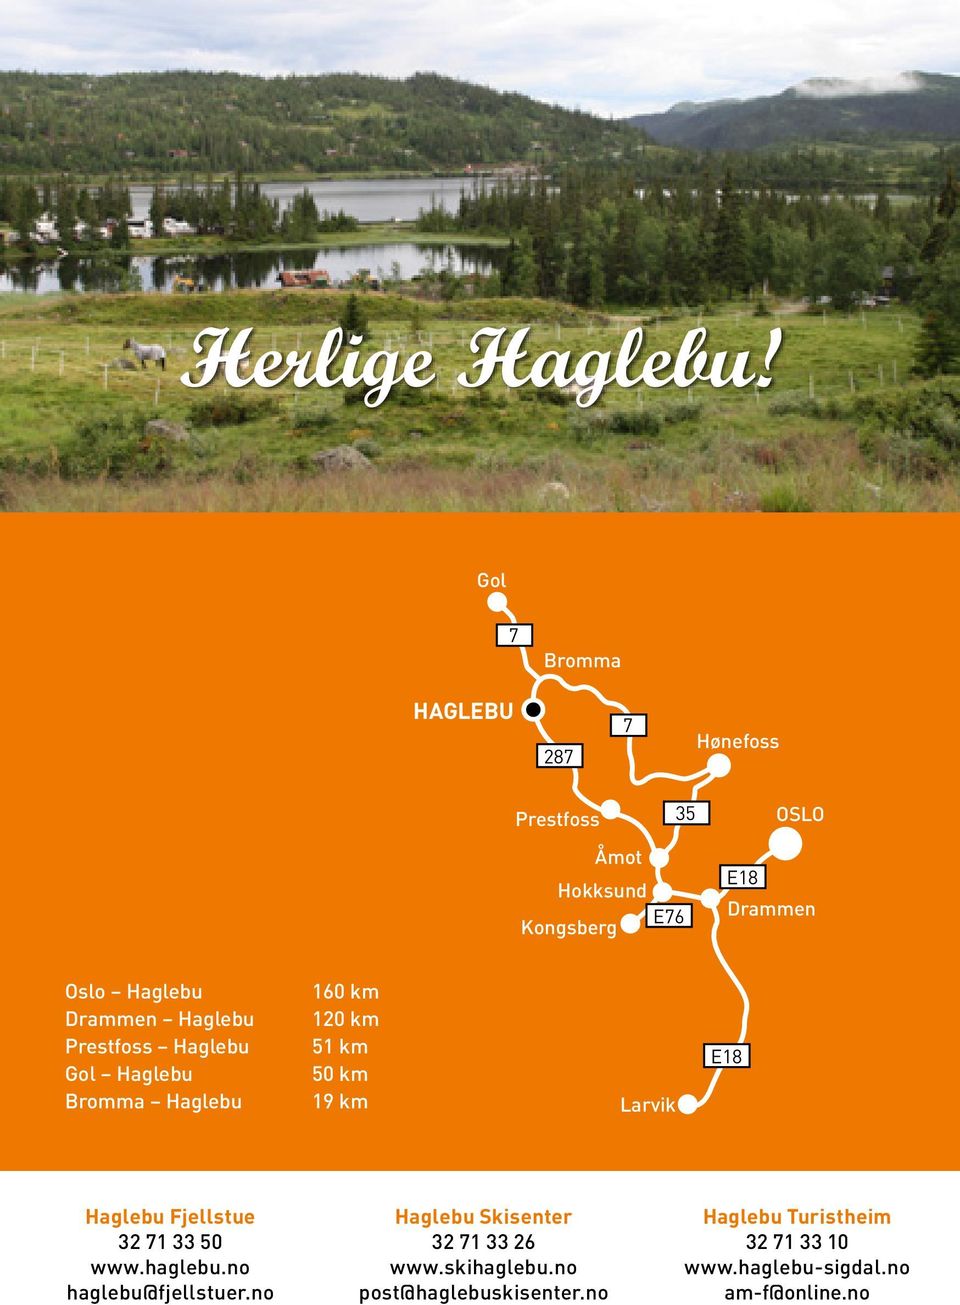 Haglebu Drammen Haglebu Prestfoss Haglebu Gol Haglebu Bromma Haglebu 160 km 120 km 51 km 50 km 19